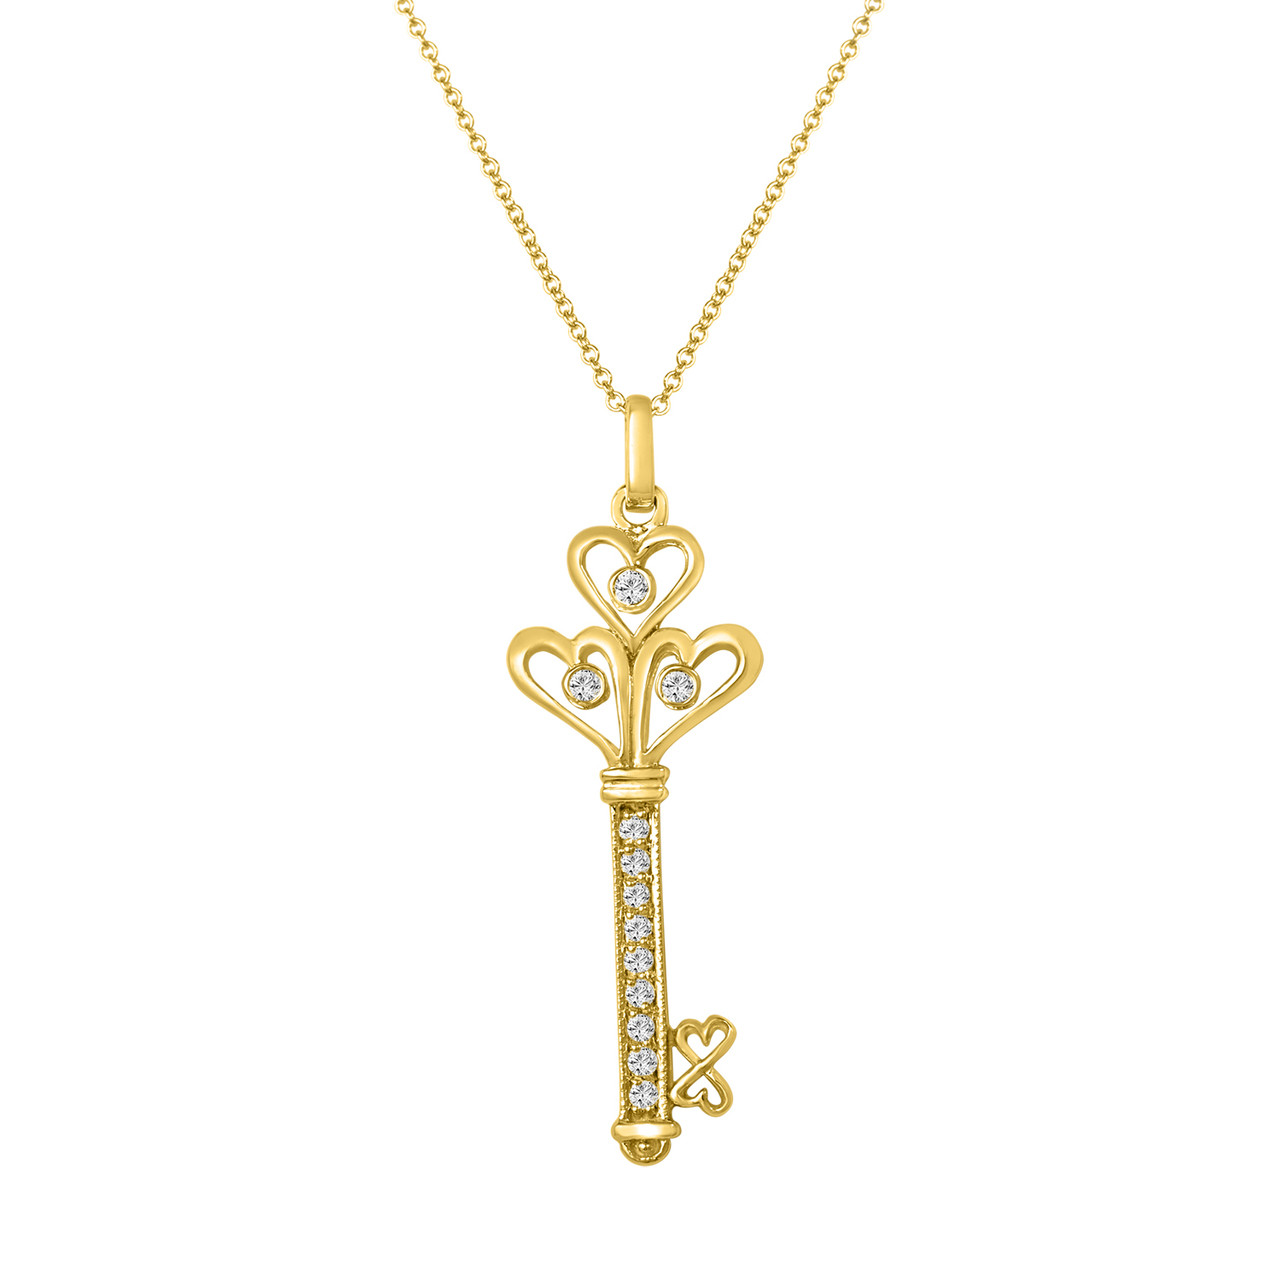 Love key pendant in gold